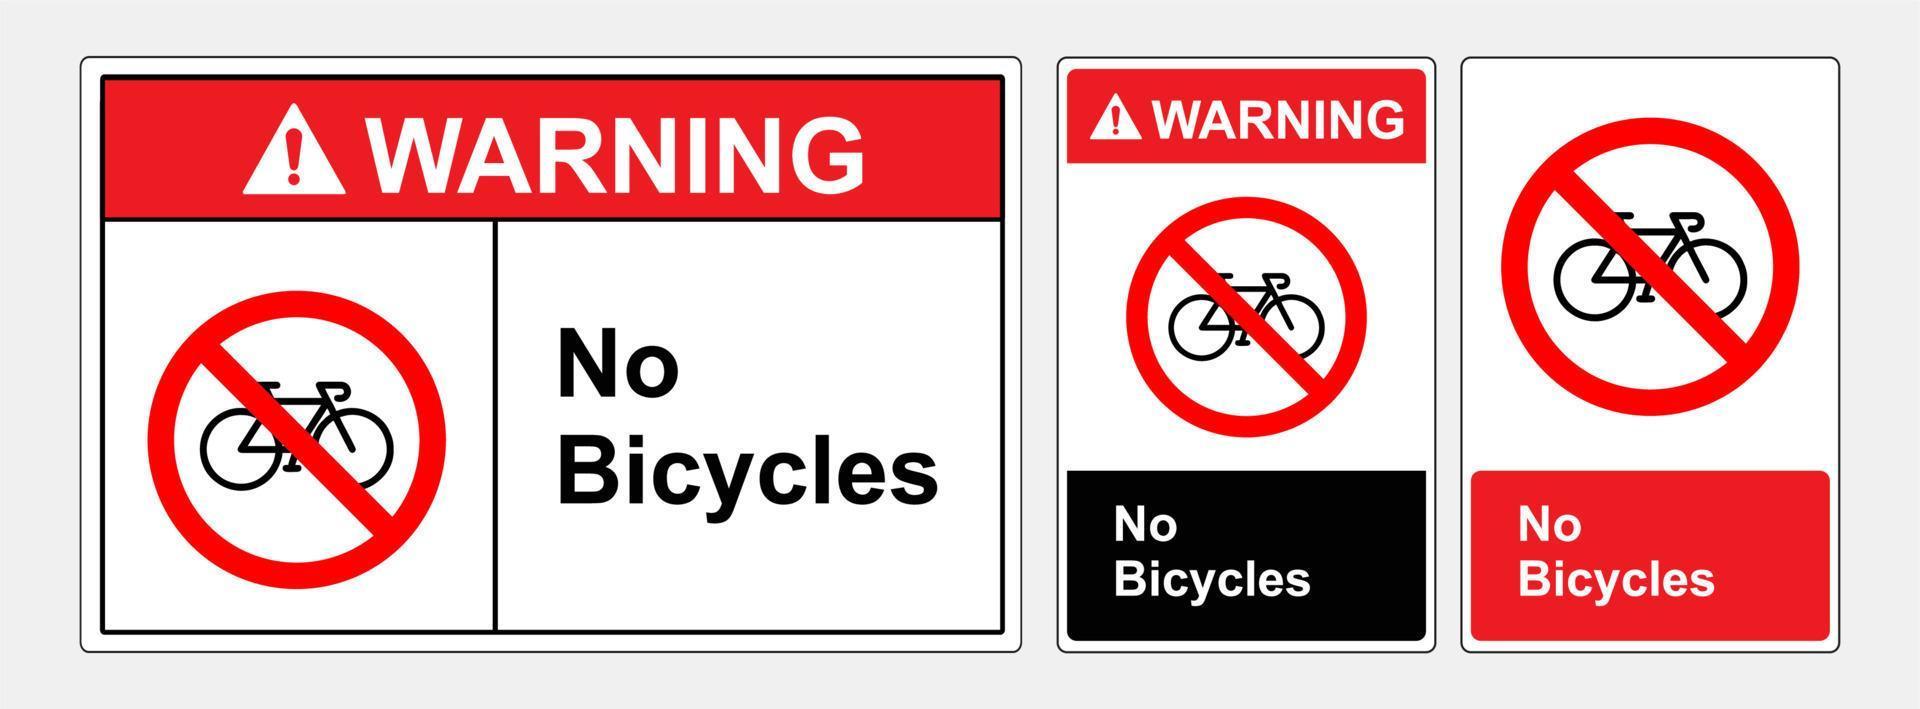 Se prohíbe la entrada de bicicletas. signo de símbolo, ilustración vectorial. etiqueta .eps10 vector